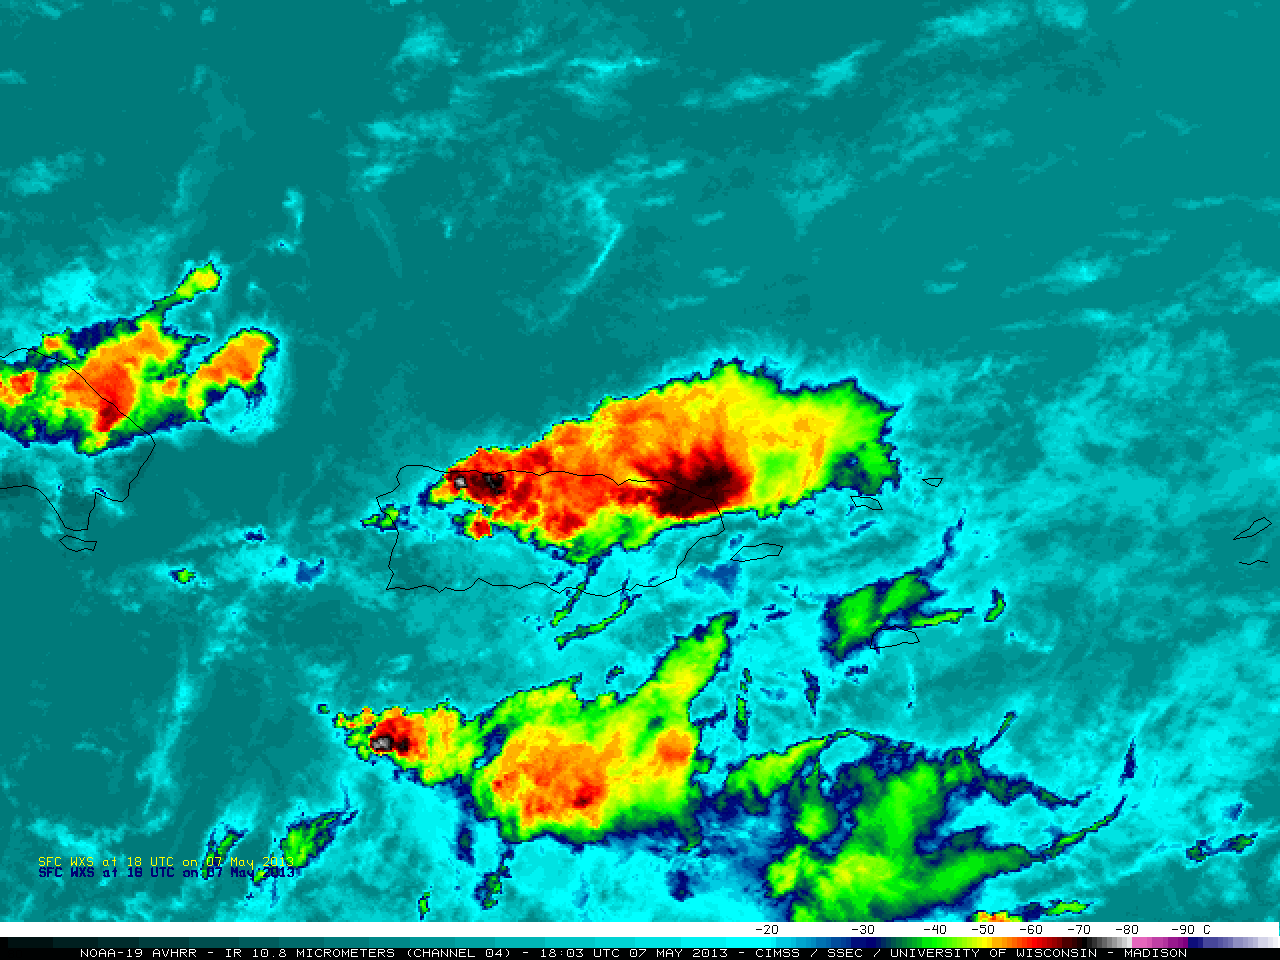 NOAA-19 AVHRR 10.8 Âµm IR channel image